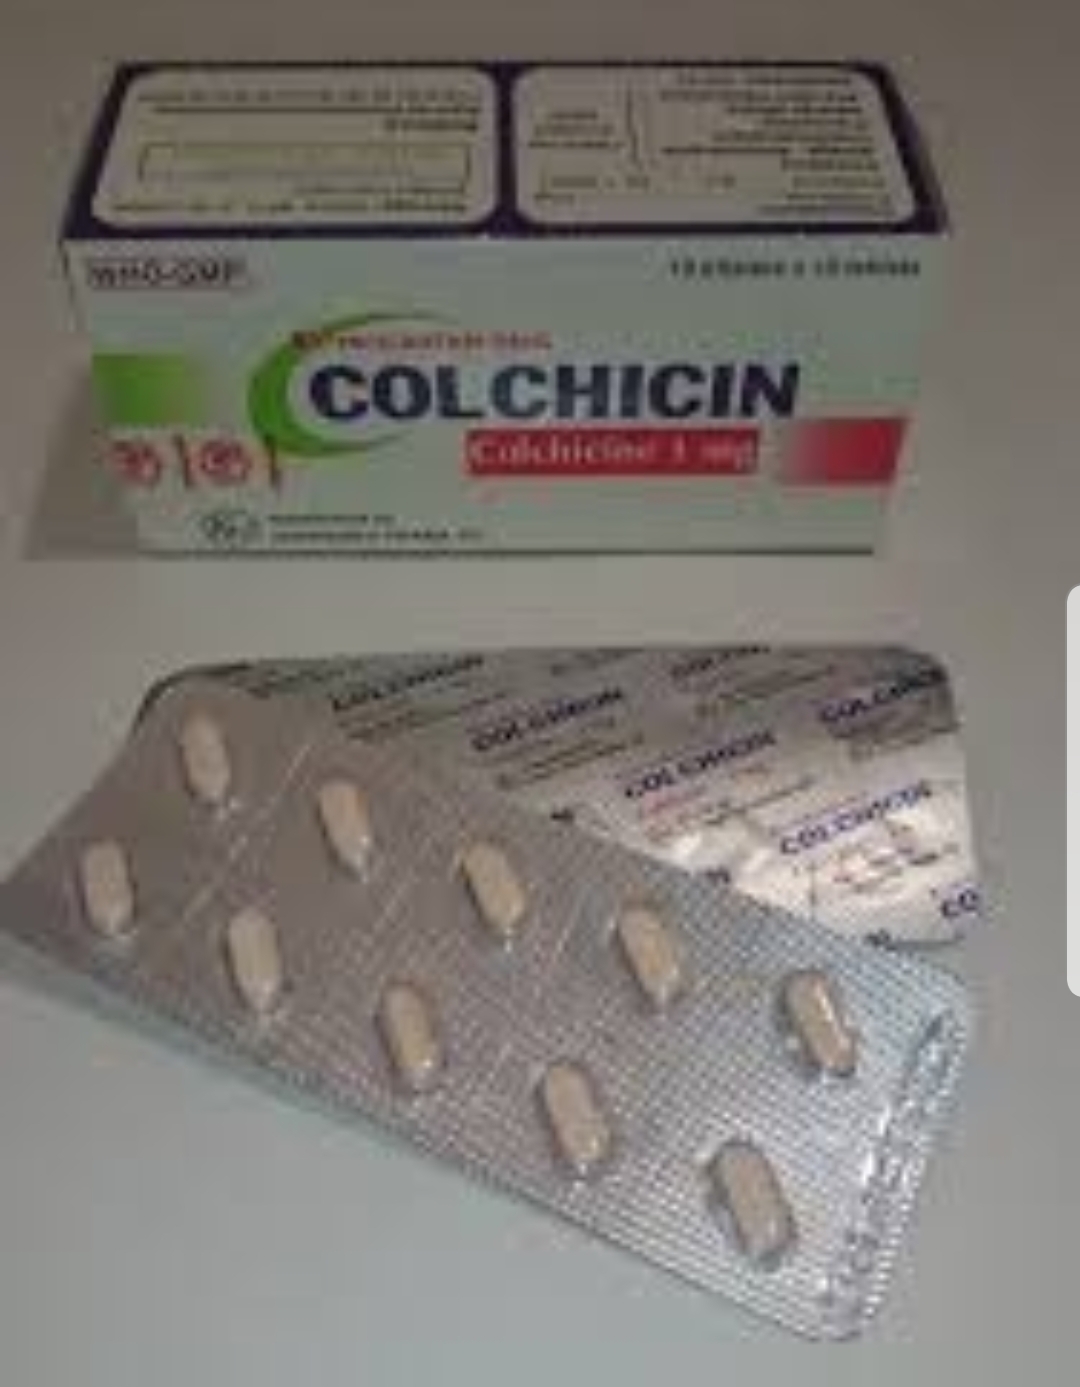 Колхицин: инструкция по применению, адреса аптек, где его можно найти